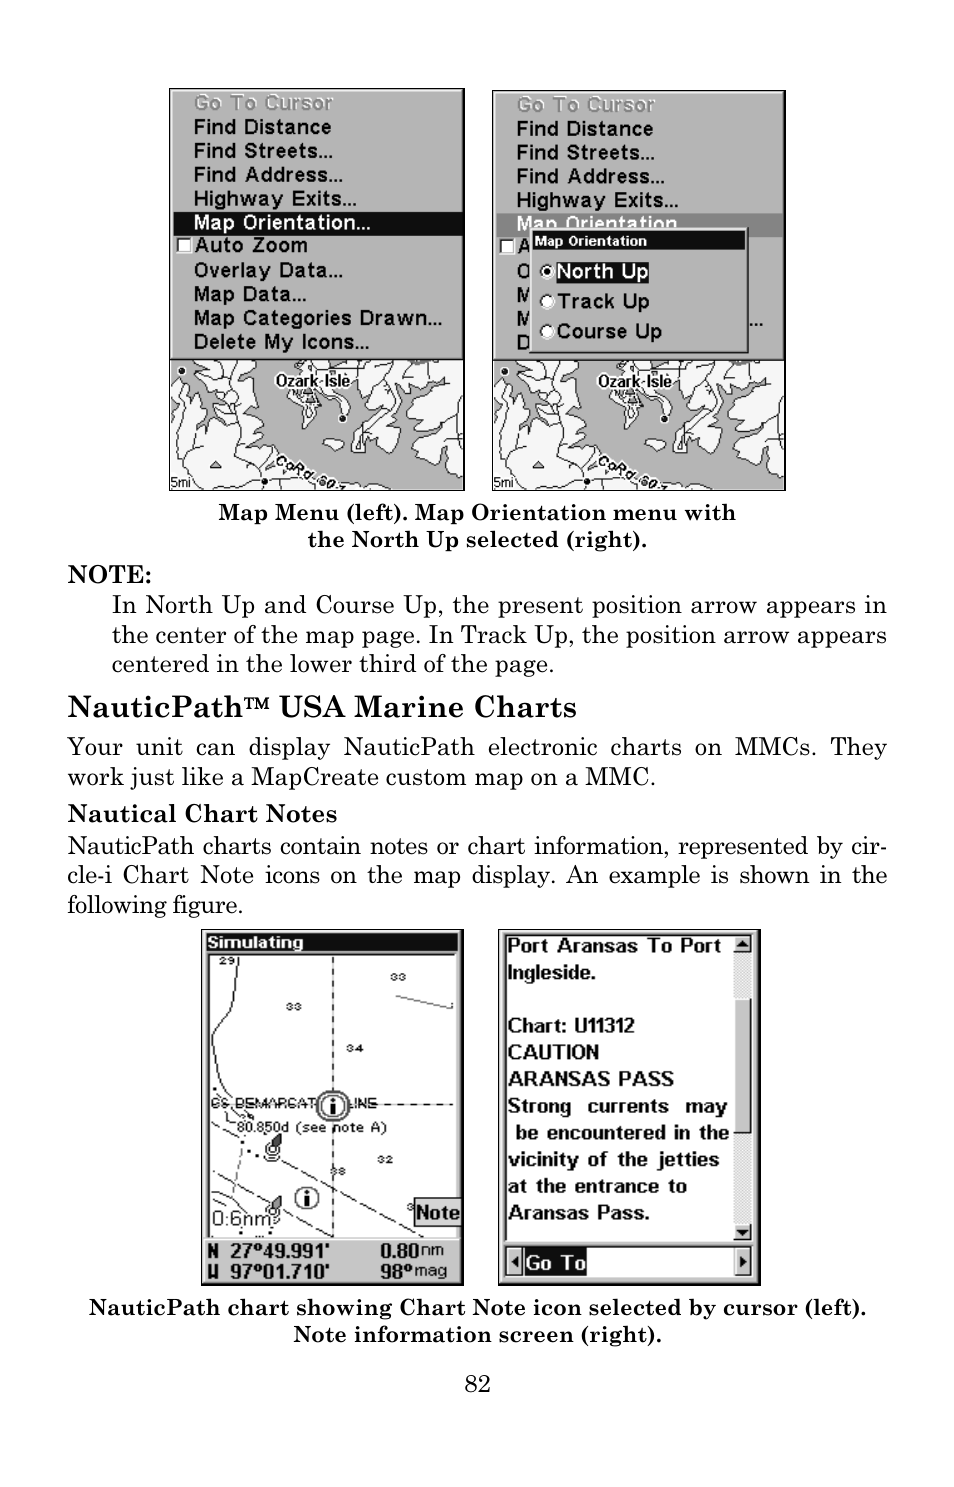 Nauticpath Charts